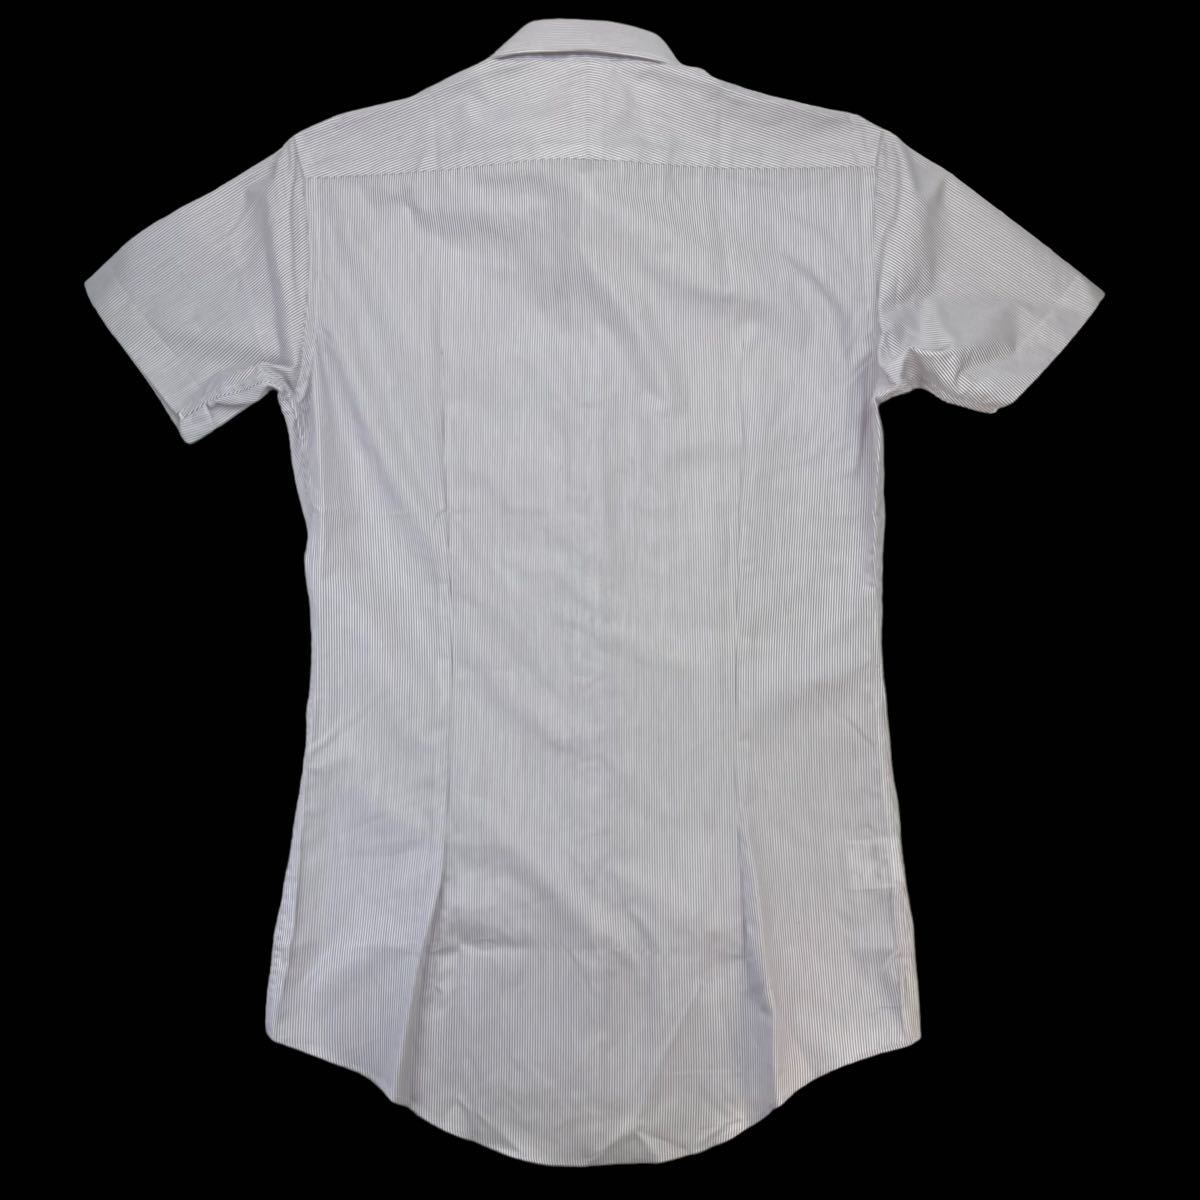 新品同様 BURBERRY BLACK LABEL バーバリーブラックレーベル 半袖シャツ ドレスシャツ サイズ38/M パープル ホワイト ストライプ柄 230361_画像6